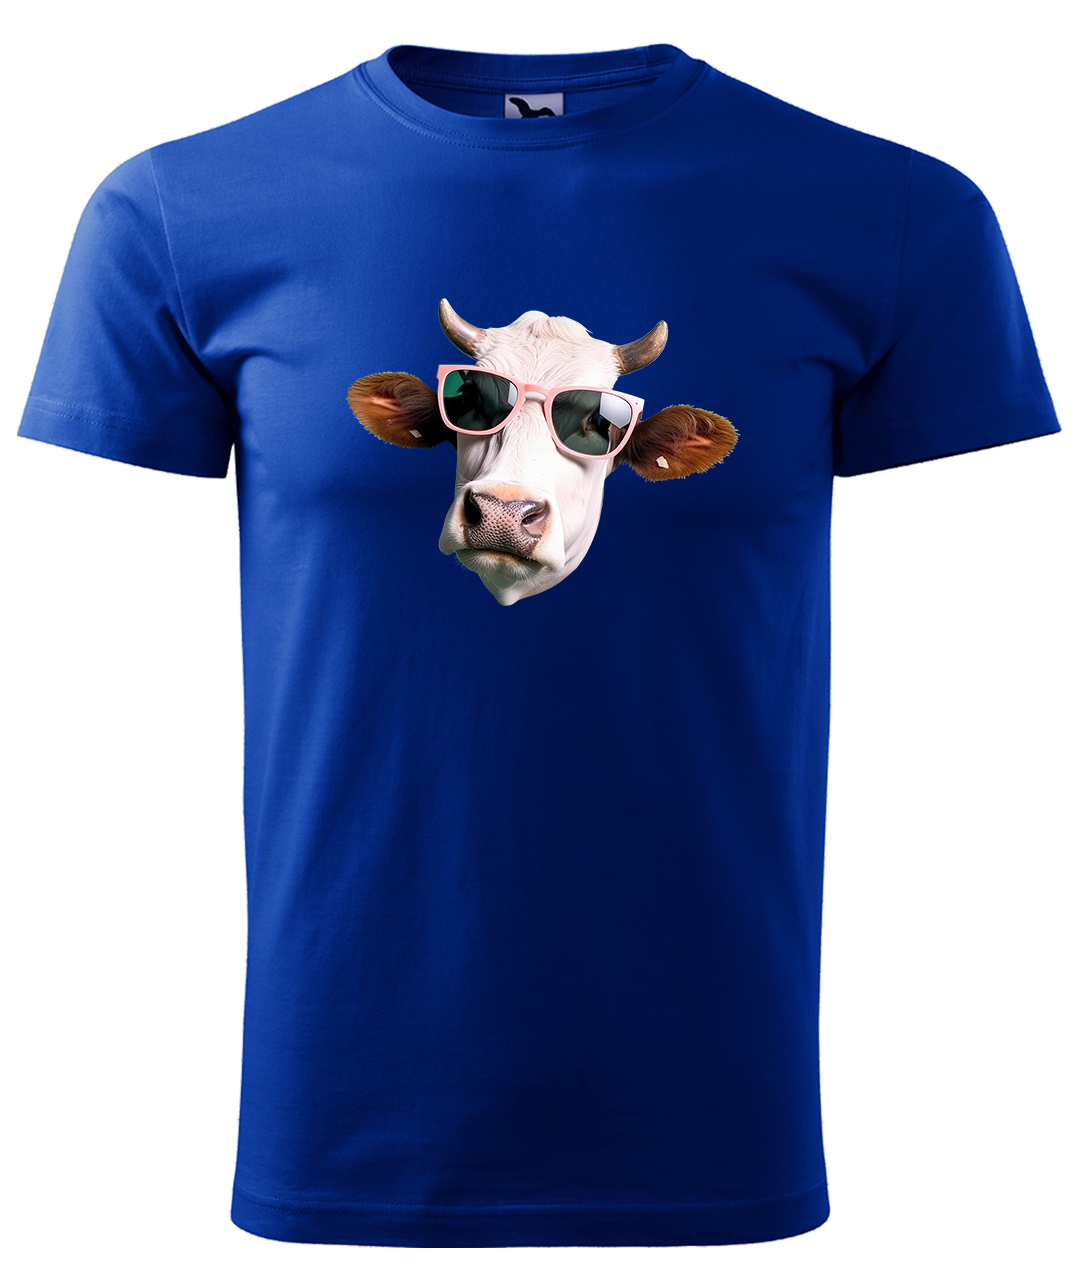 Dětské tričko s krávou - Kráva v brýlích Velikost: 10 let / 146 cm, Barva: Královská modrá (05), Délka rukávu: Krátký rukáv